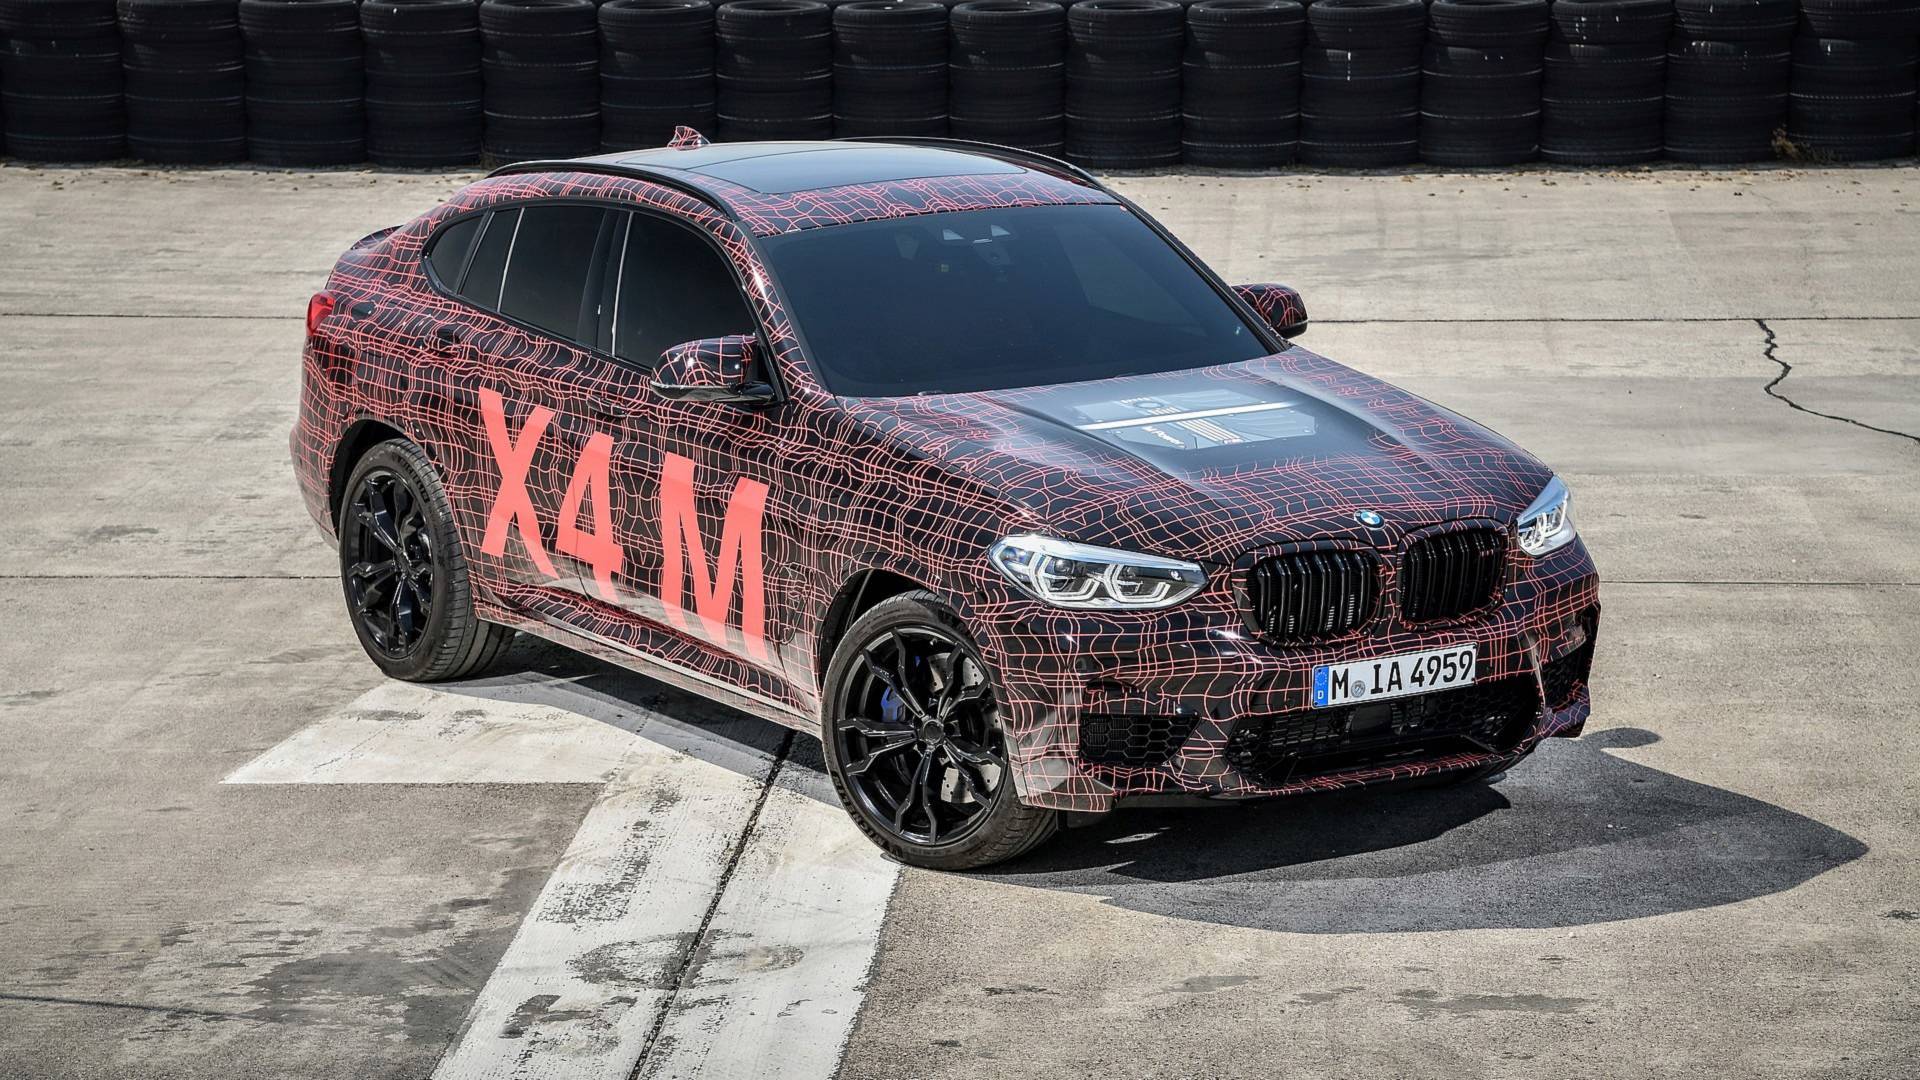 Ya casi están aquí: nuevos BMW X3 M y X4 M, imágenes oficiales